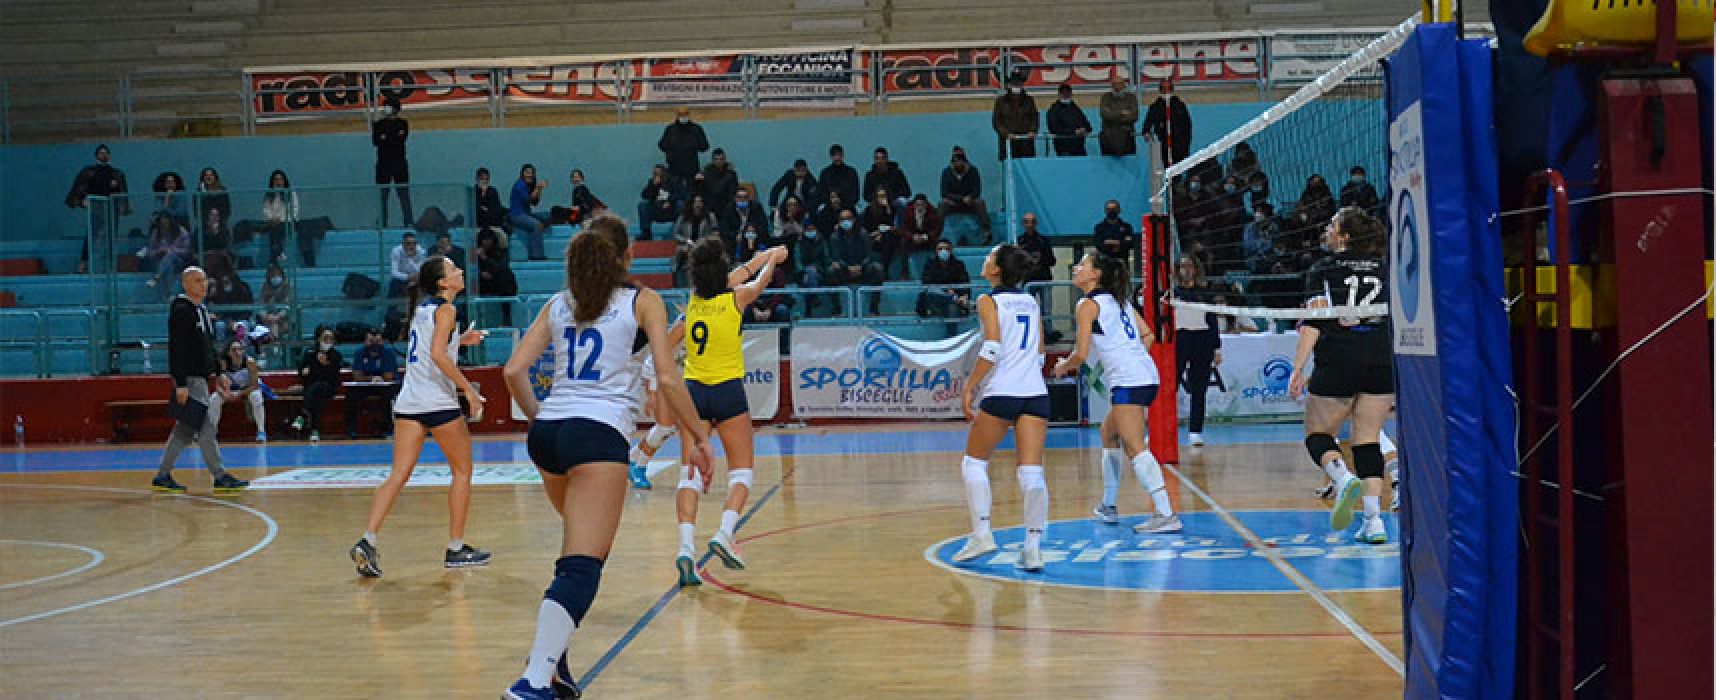 Sportilia Volley abbatte Pescara 3 e trova la terza vittoria consecutiva / CLASSIFICA